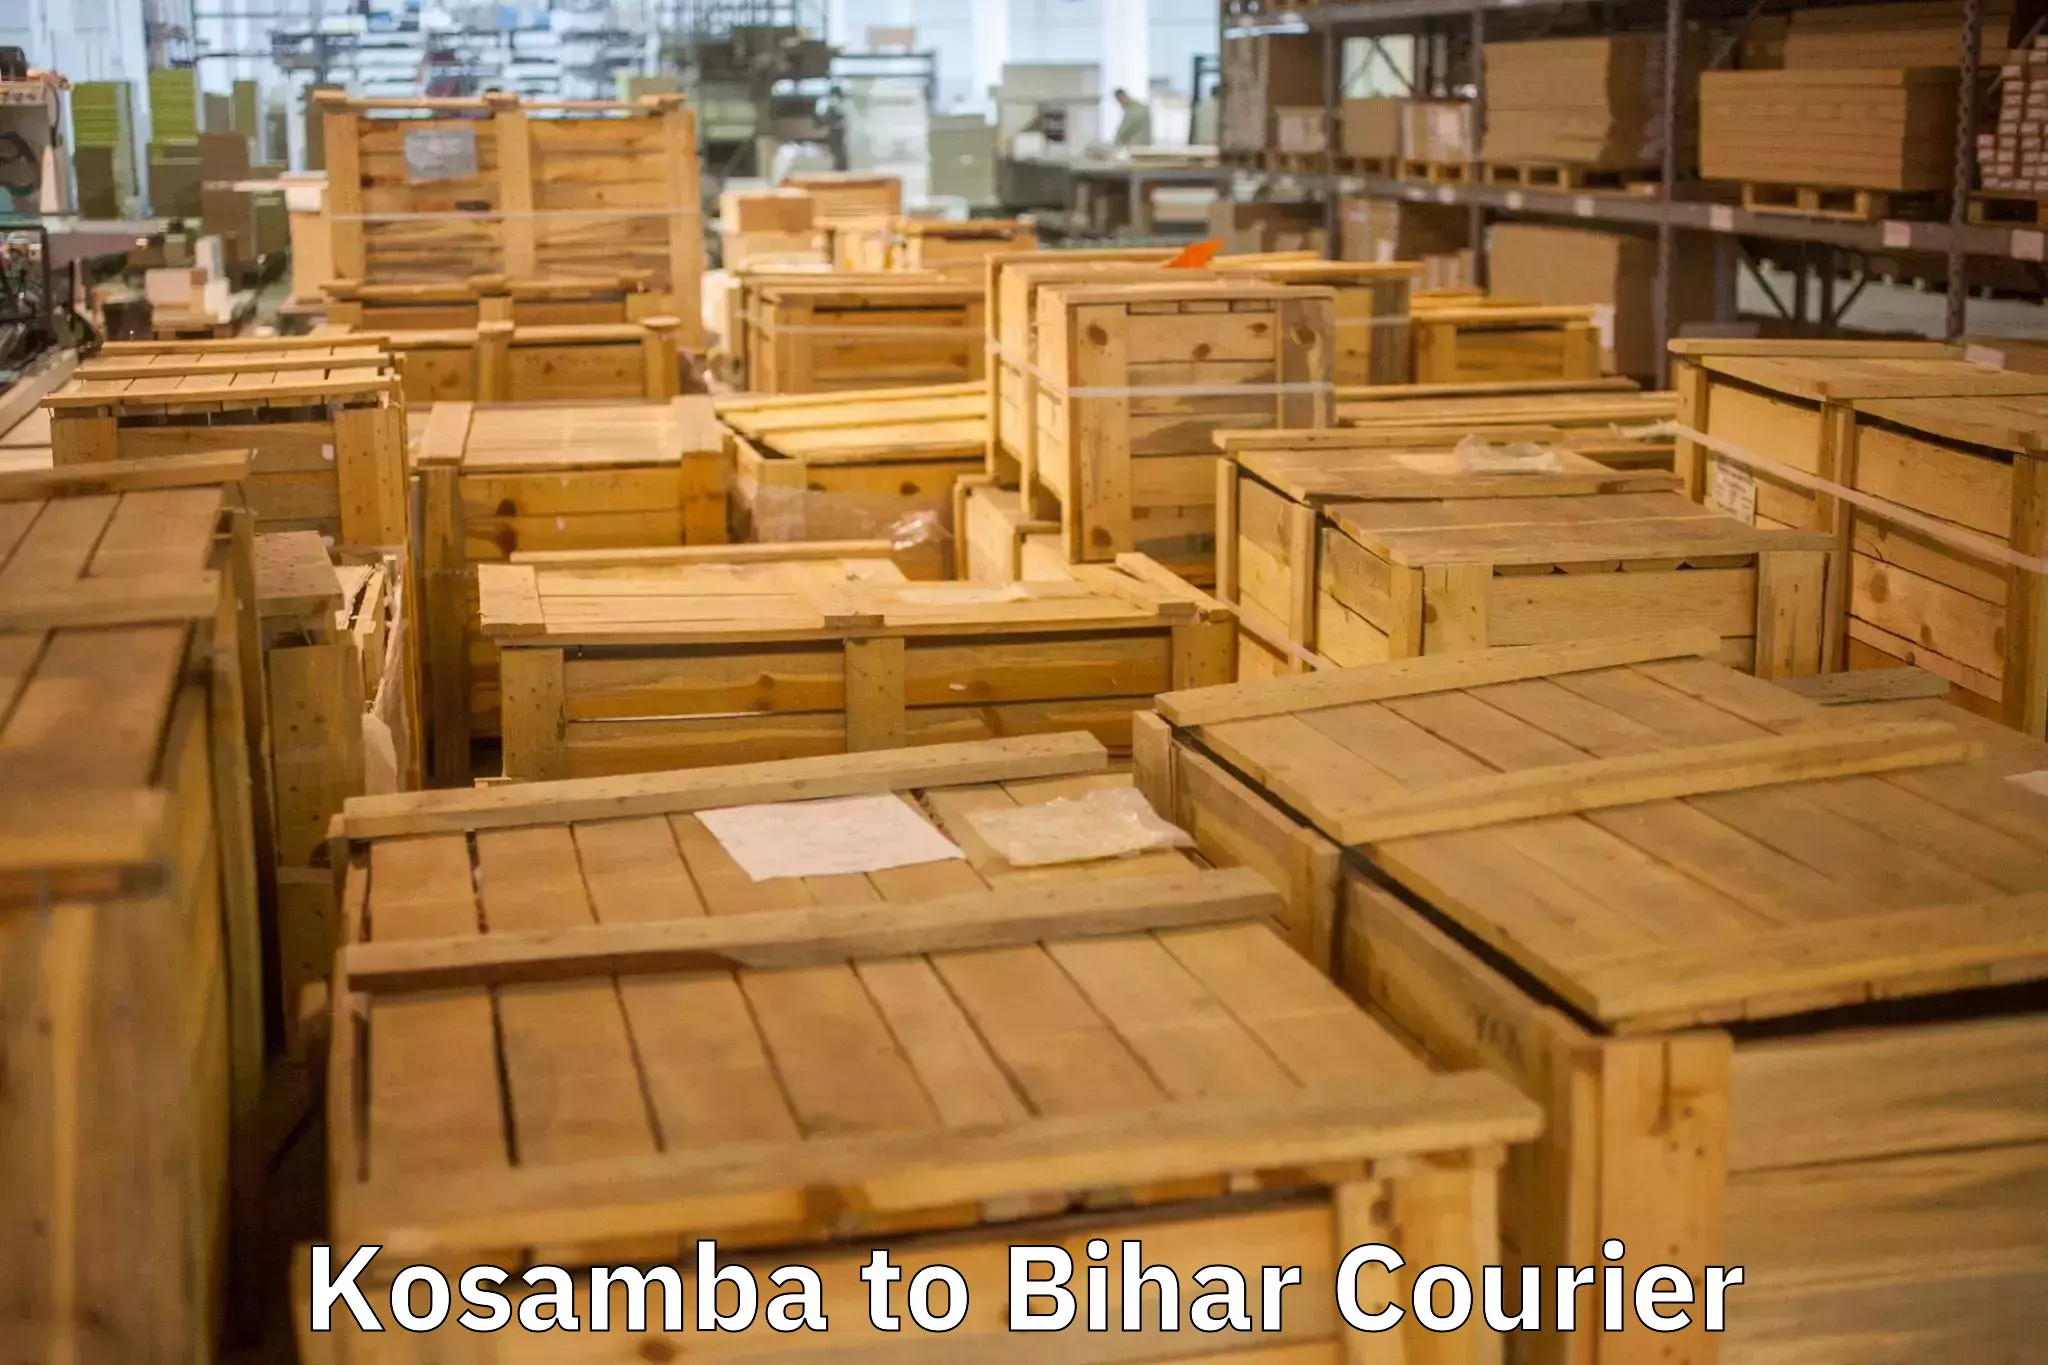 Efficient moving company Kosamba to Bakhri